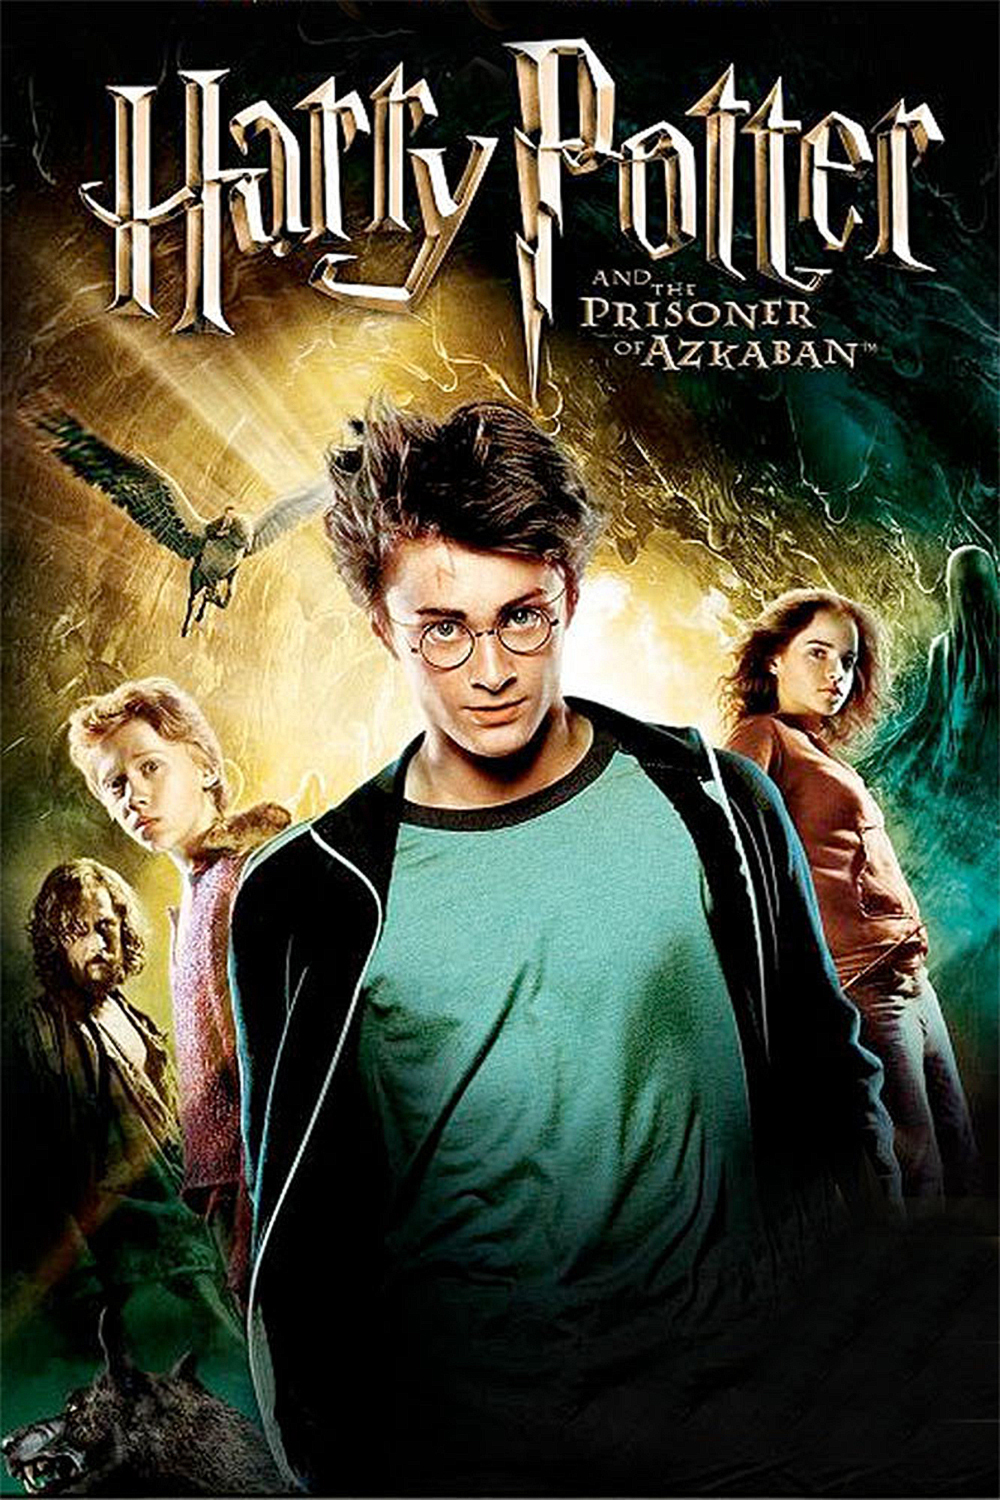 Harry potter prisoner of azkaban full movie